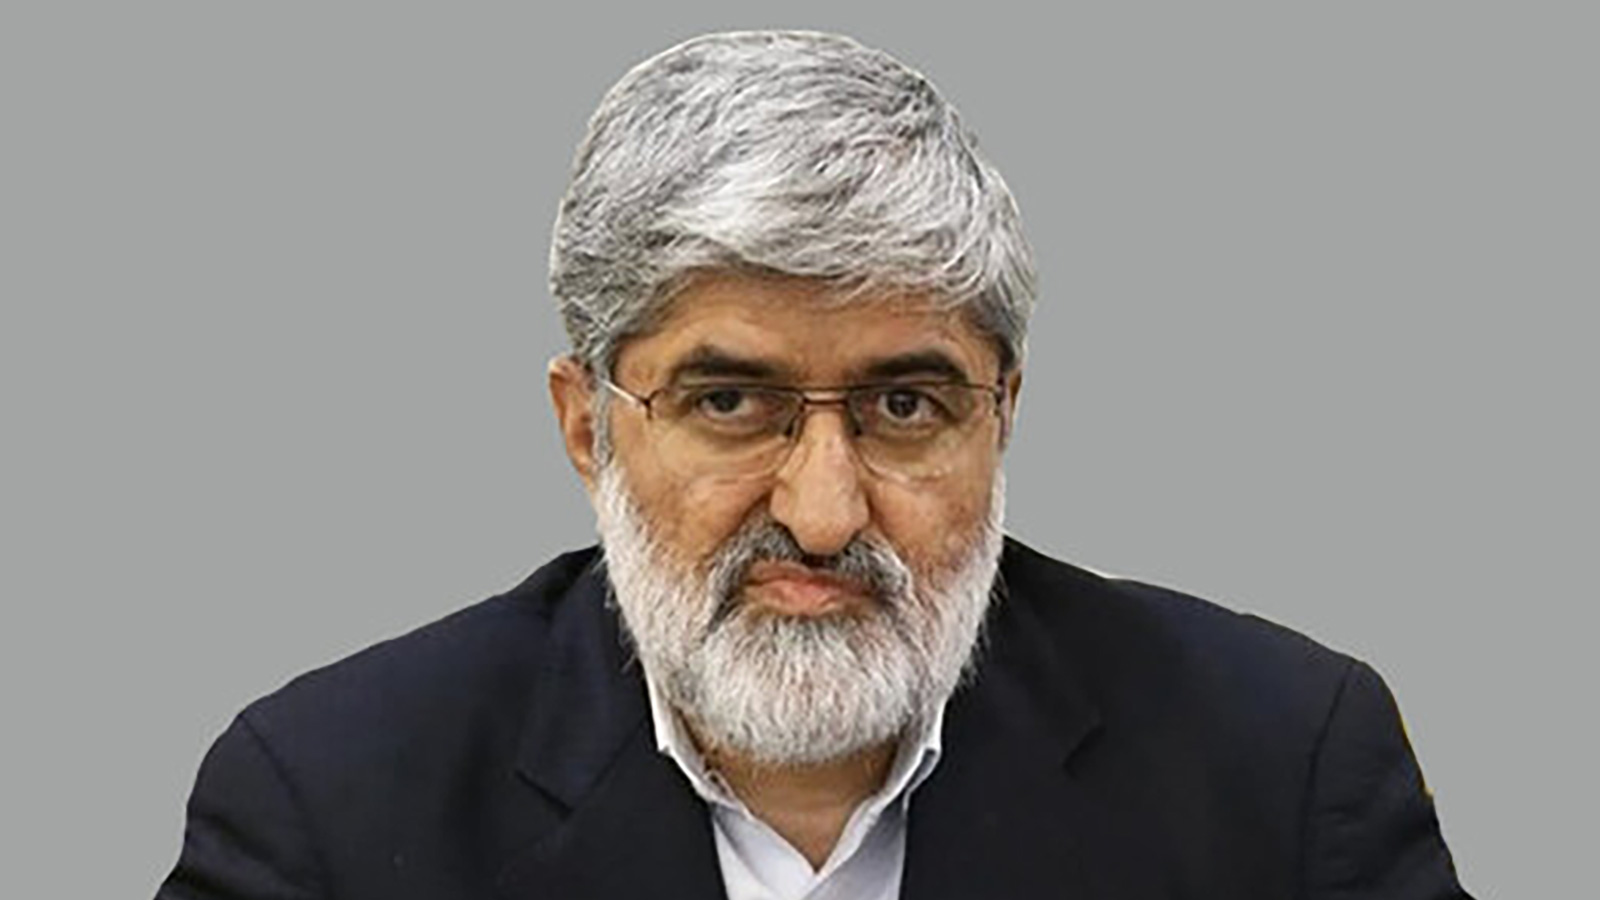 ‪النائب علي مطهري حذر من تضييق دائرة الثورة وإبعاد الناس منها‬  (الصحافة الإيرانية)